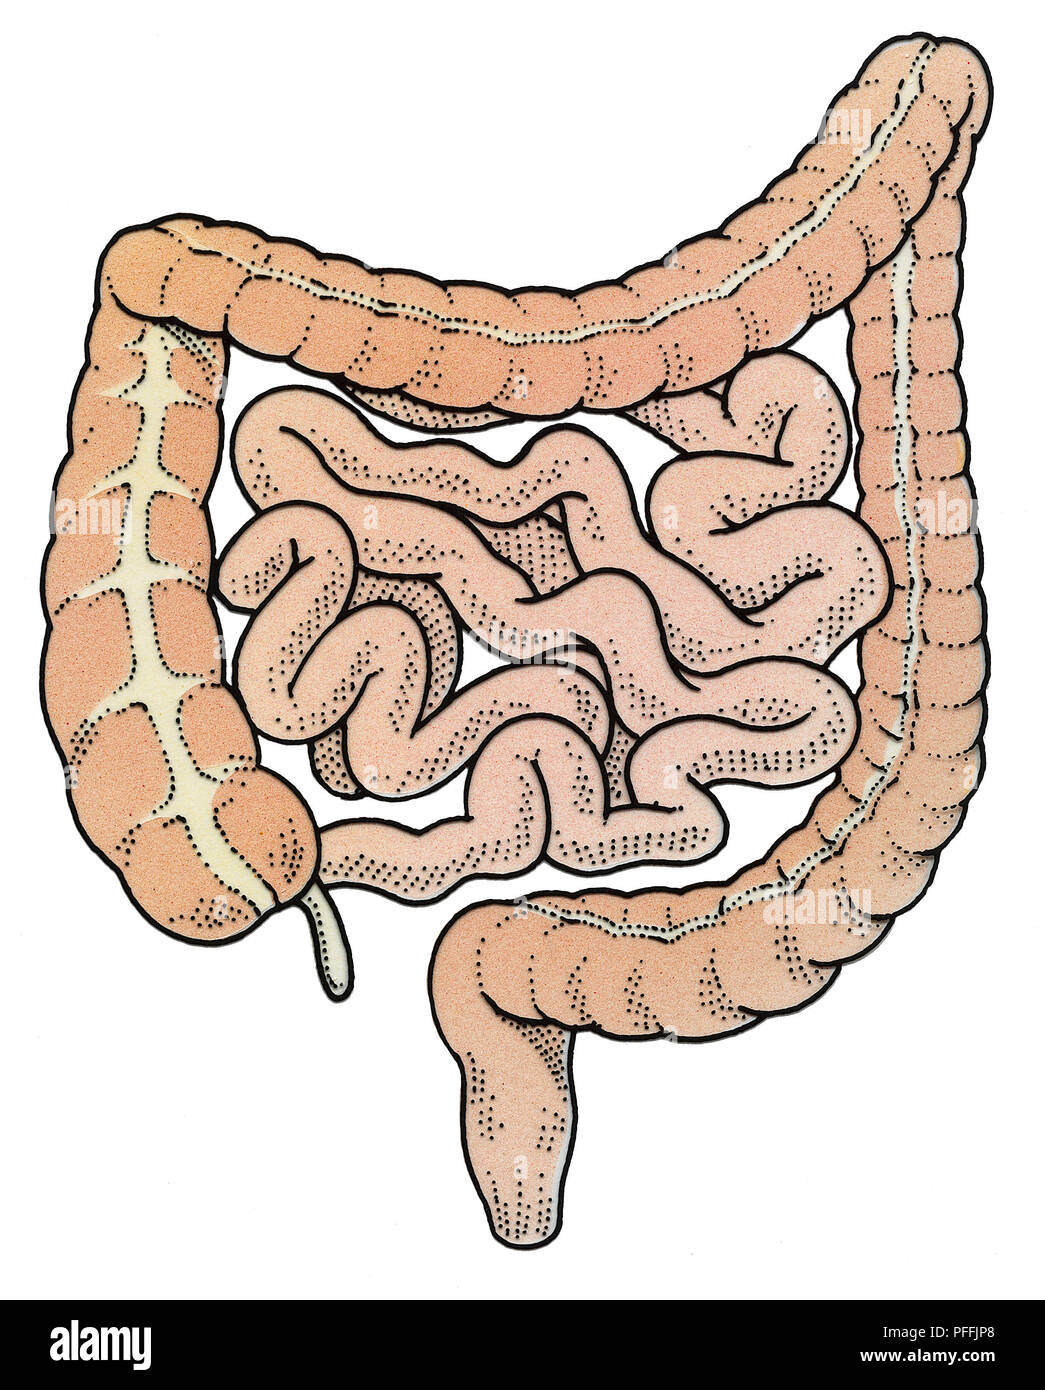 Schema dell'intestino umano. Foto Stock